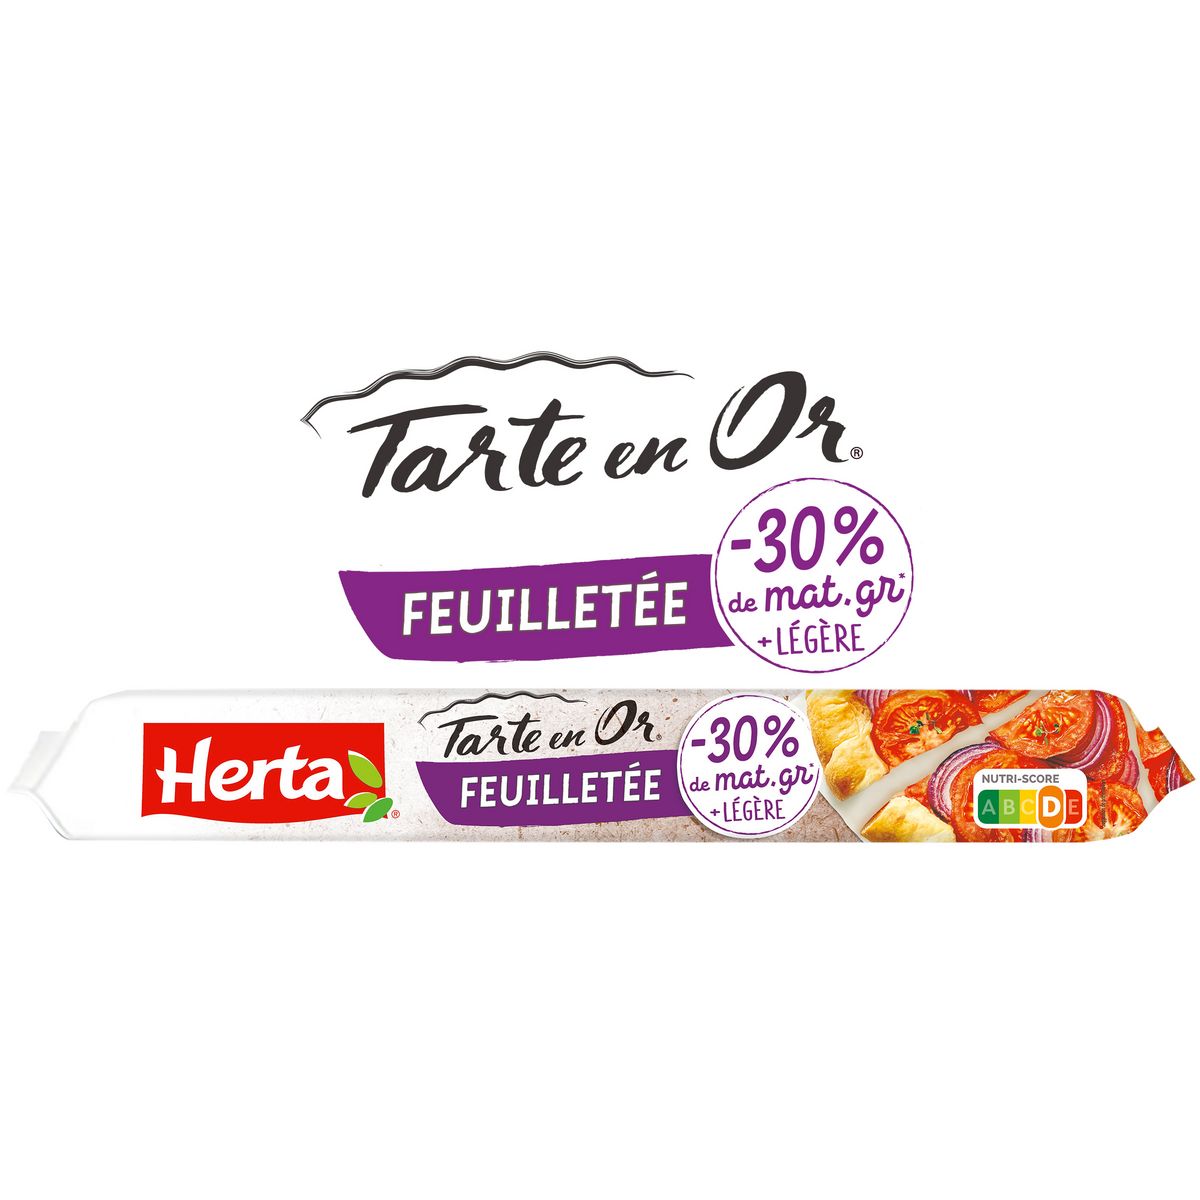 HERTA Tarte en Or pâte feuilletée -30% de matière grasse 230g